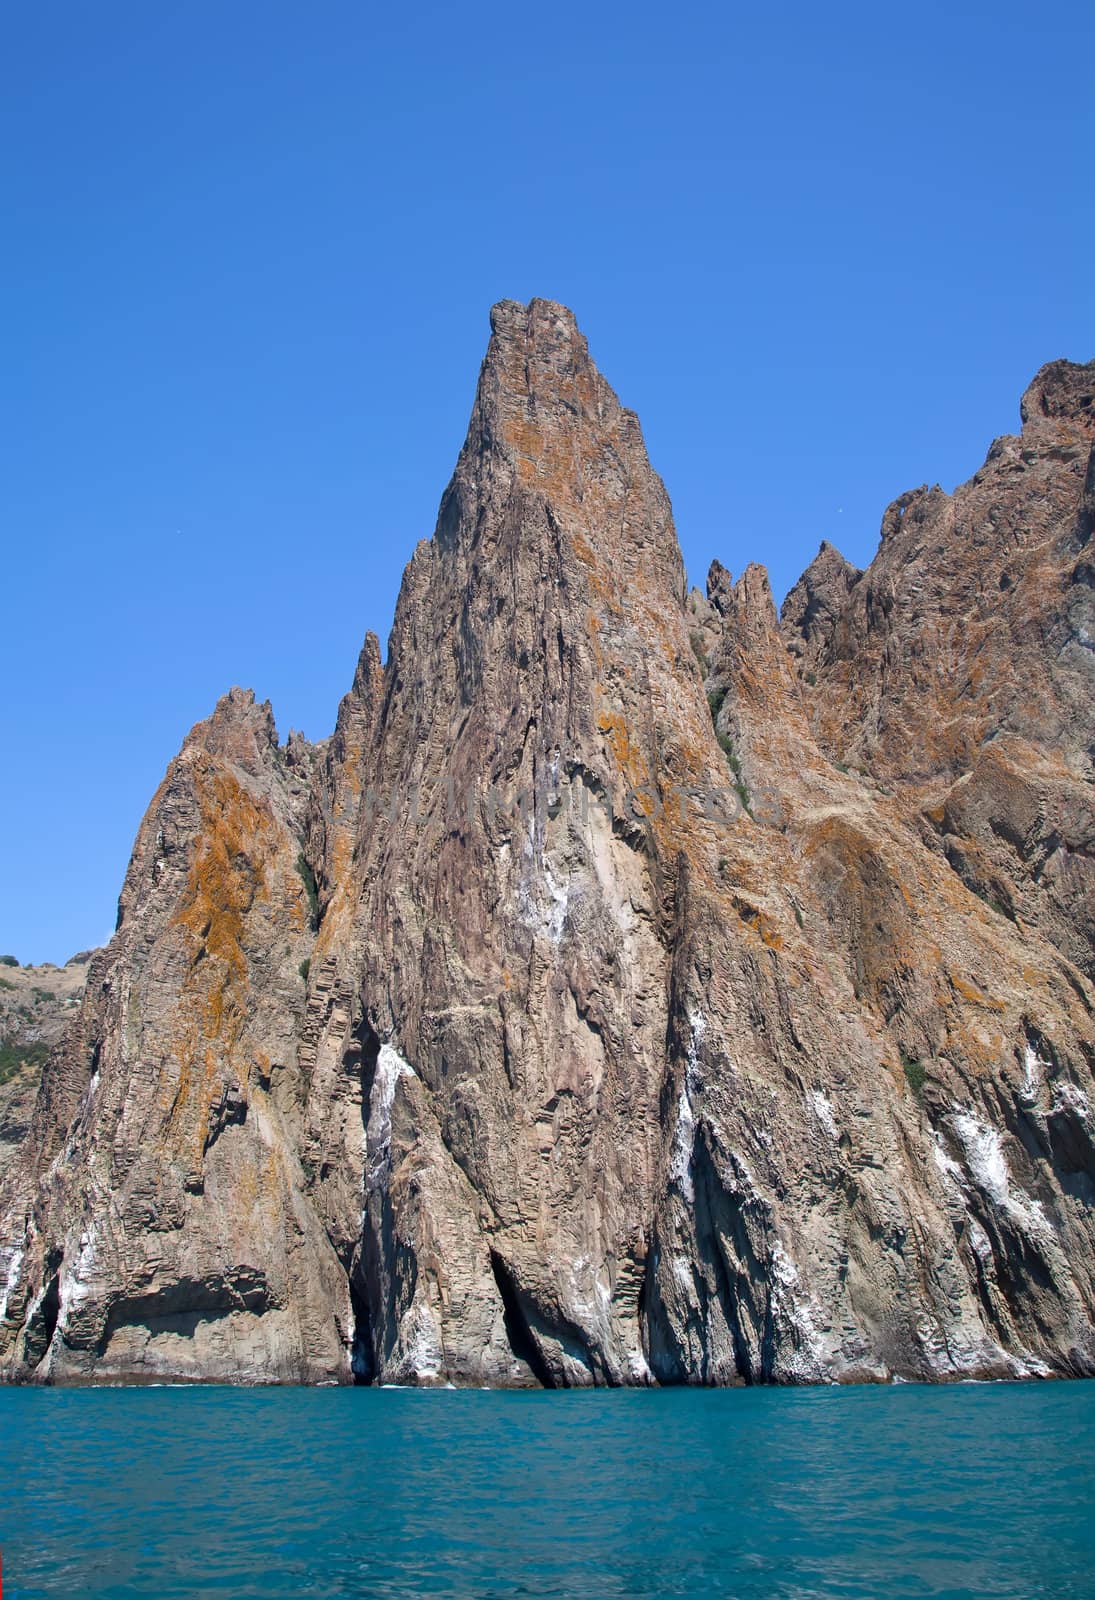 Crimean rocks near Kara Dag mountain